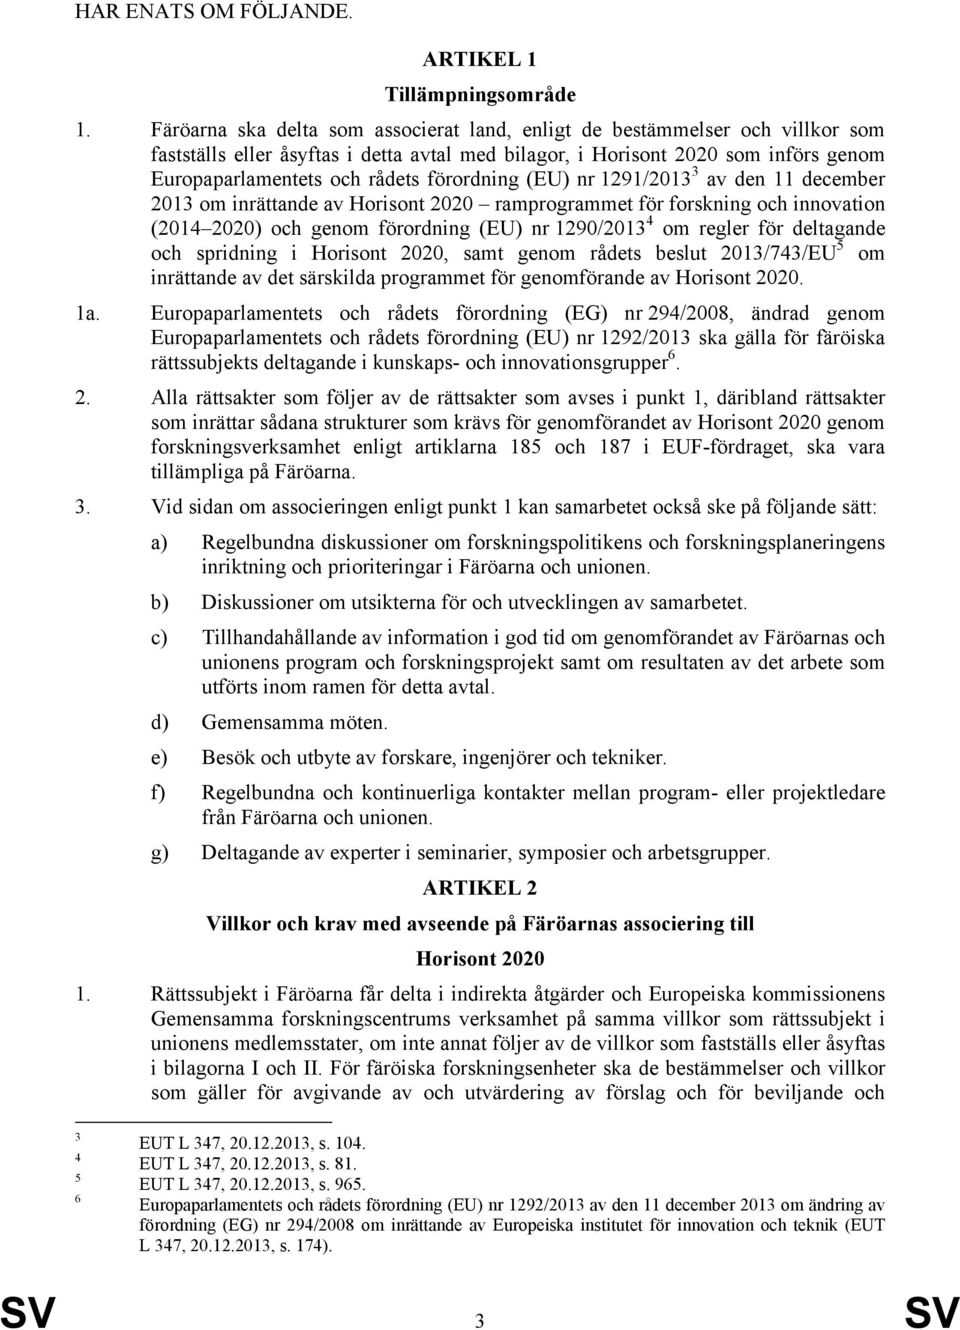 förordning (EU) nr 1291/2013 3 av den 11 december 2013 om inrättande av Horisont 2020 ramprogrammet för forskning och innovation (2014 2020) och genom förordning (EU) nr 1290/2013 4 om regler för